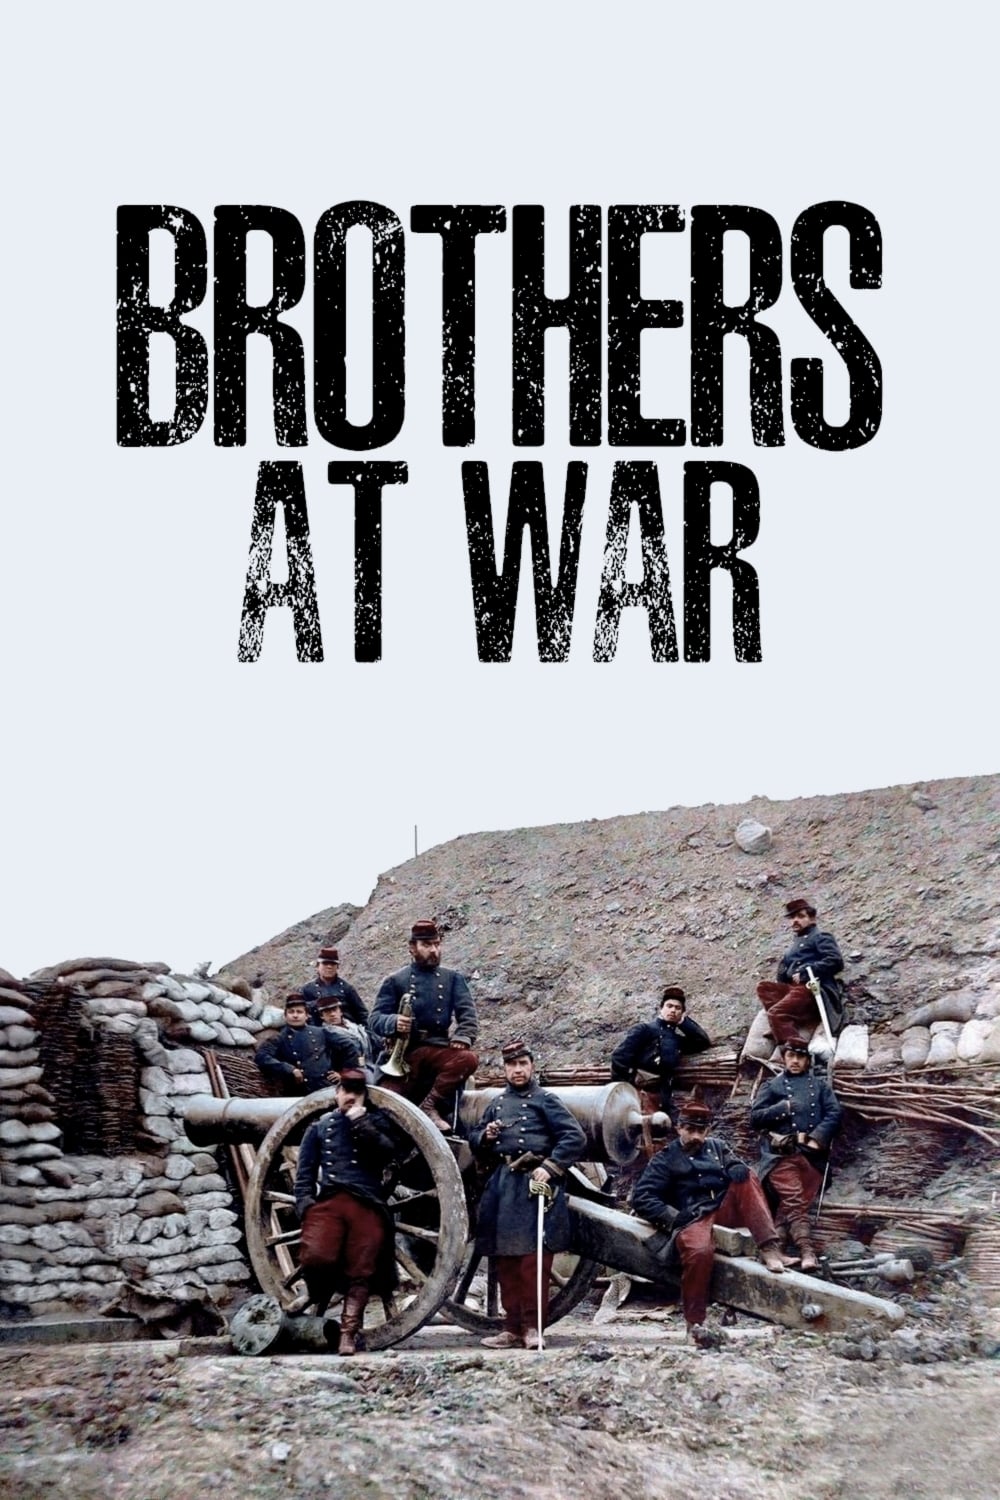 Brothers at War